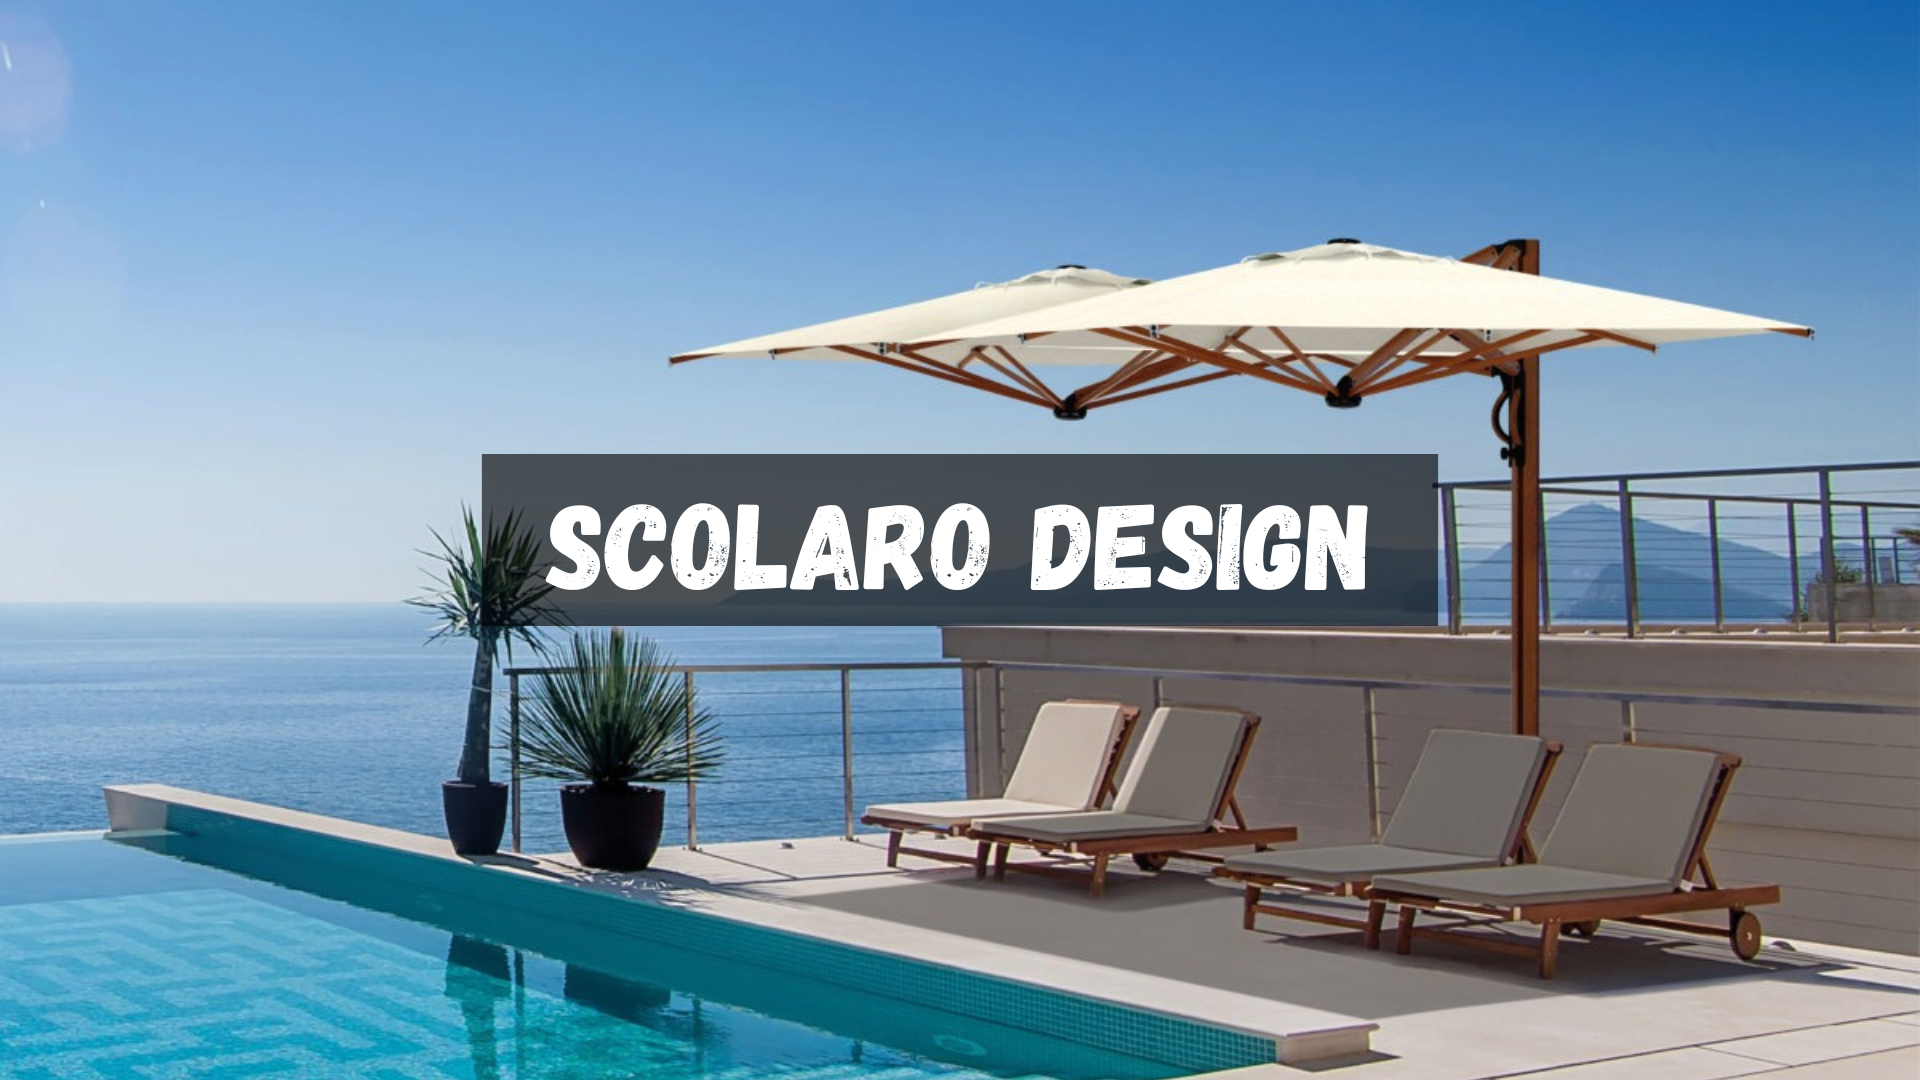 Scolaro Design